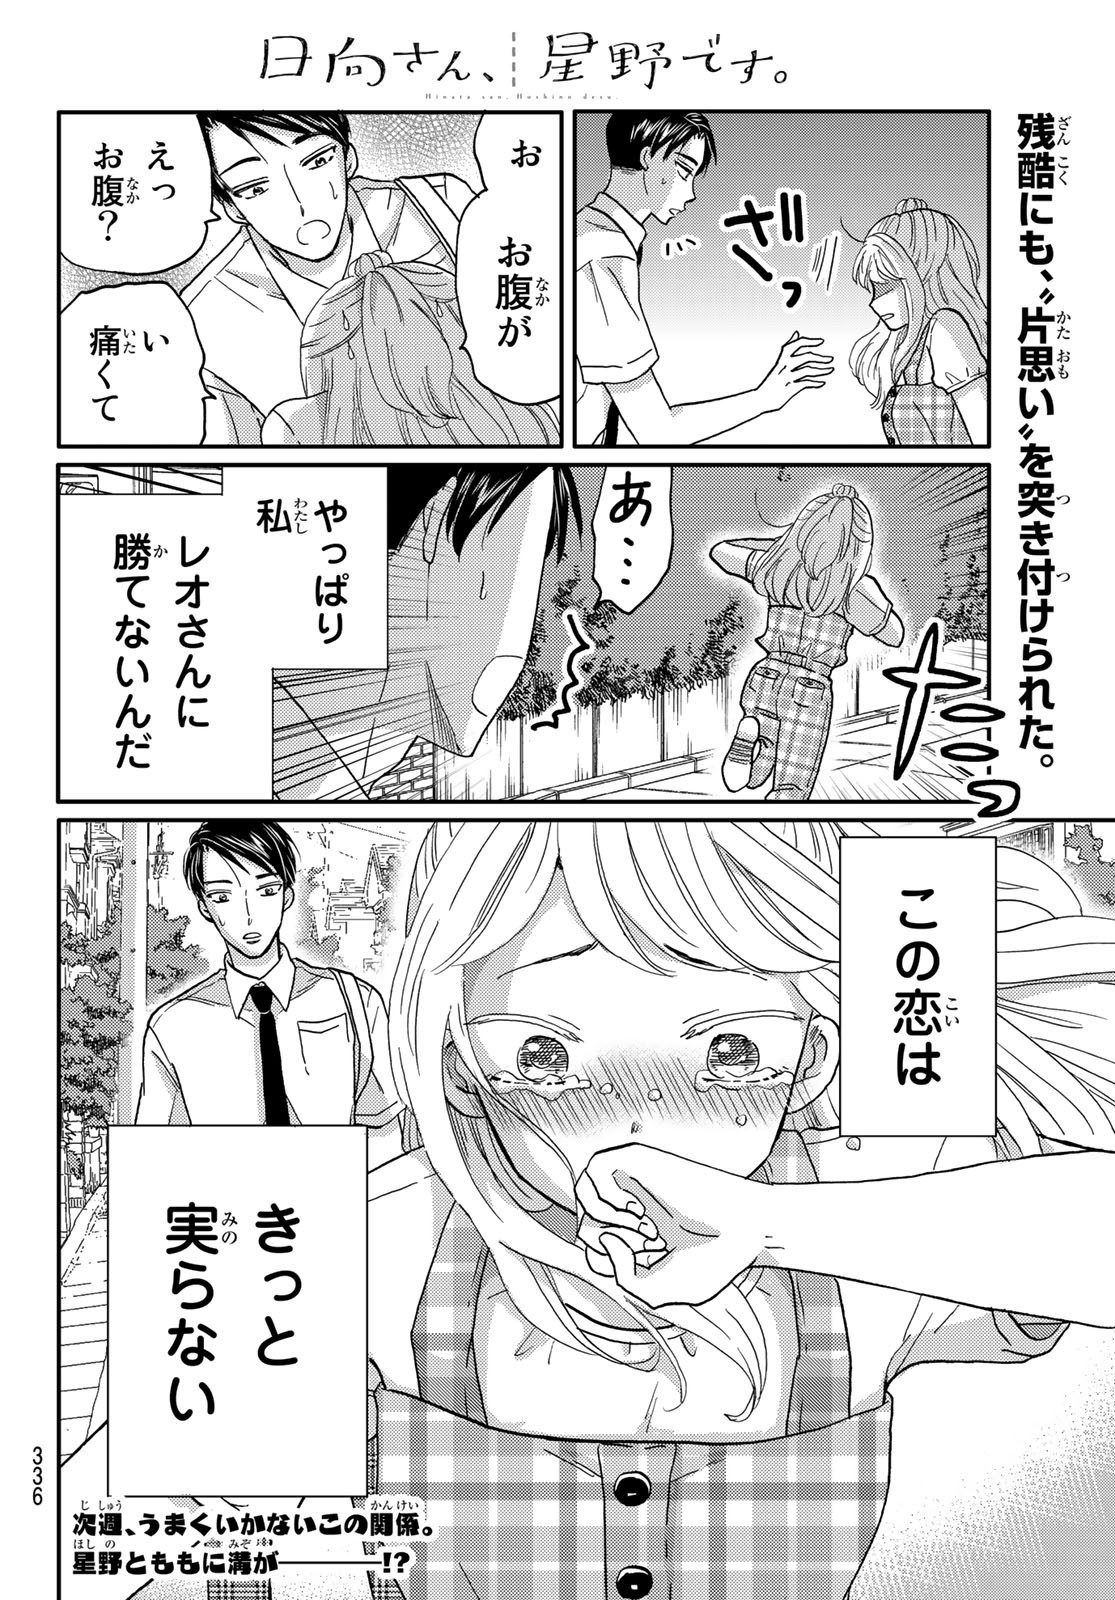 Hinata-san, Hoshino desu. - Chapter 039 - Page 10